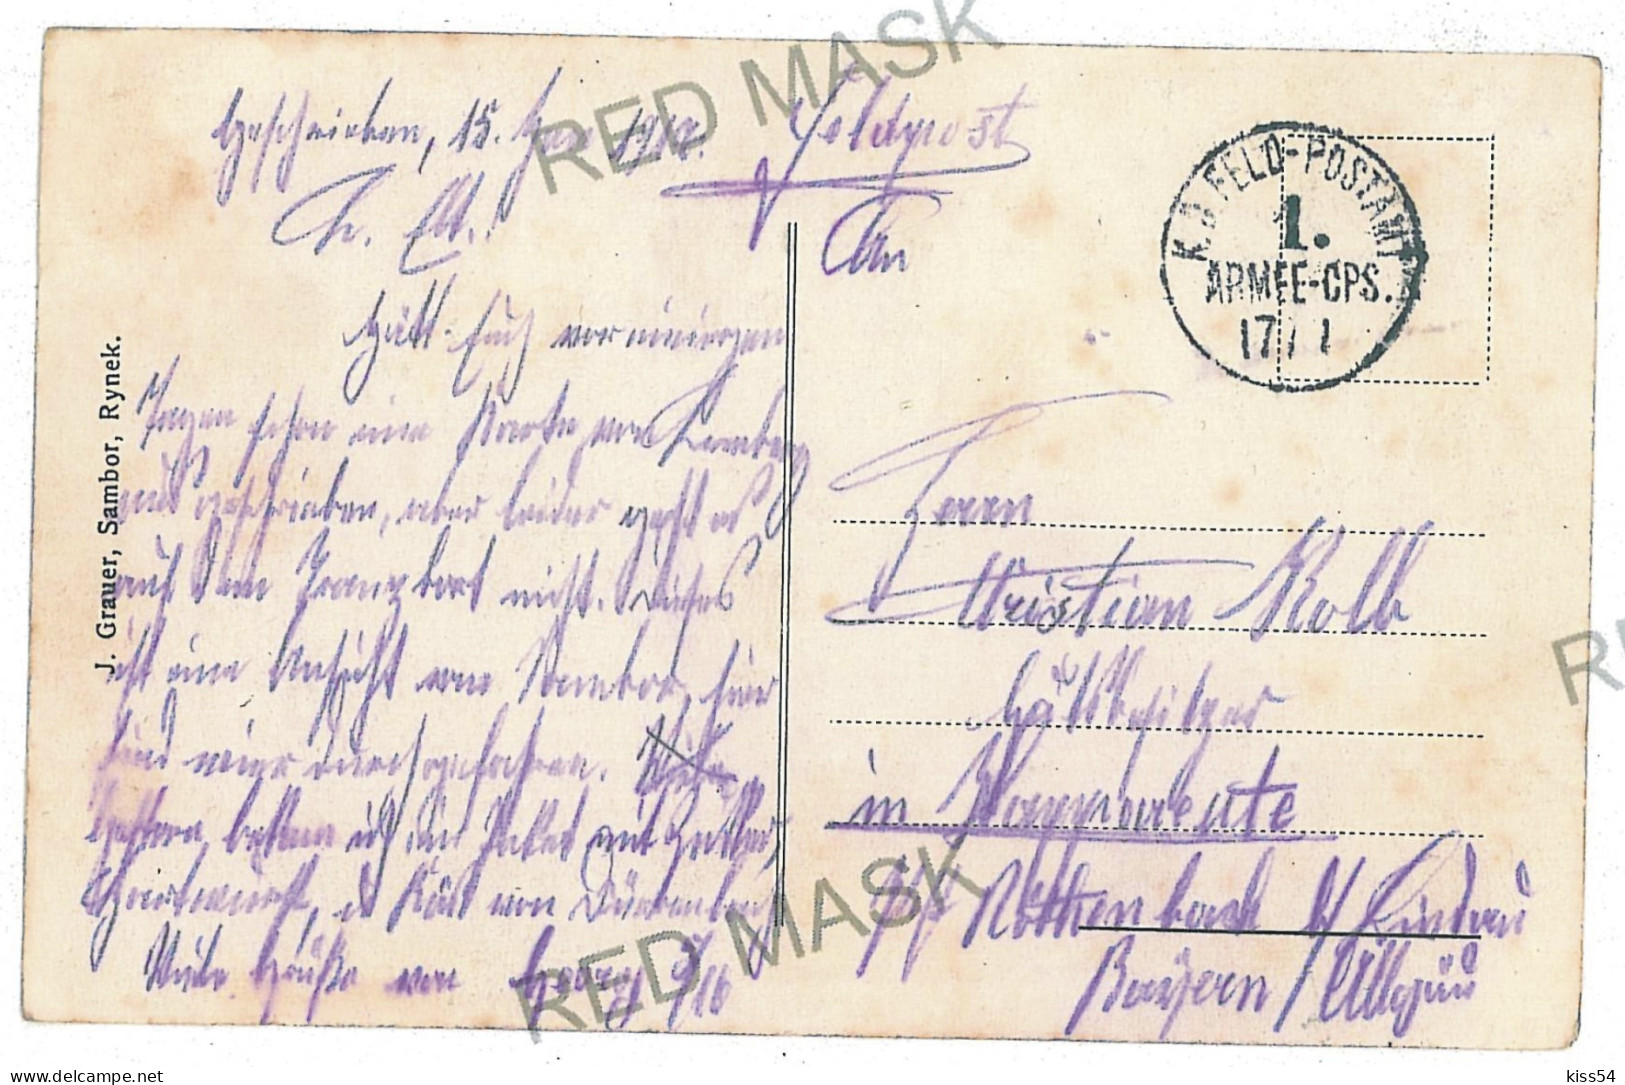 UK 36 - 10461 SAMBIR, Railway Station, Ukraine - Old Postcard - Used - 1916 - Ukraine